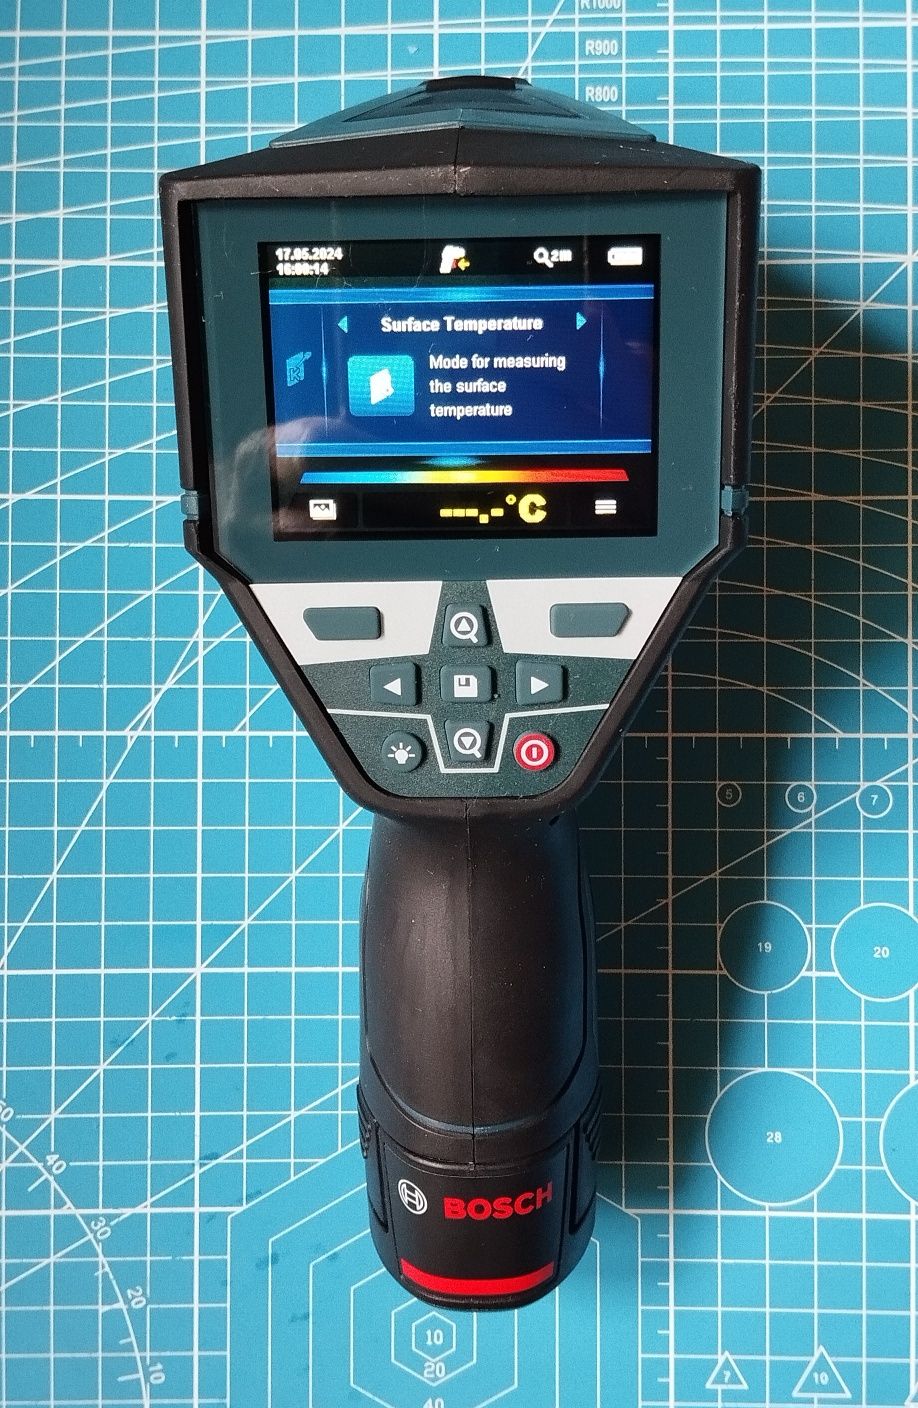 Termodetector umidometru cu bluetooth Bosch GIS 1000 C